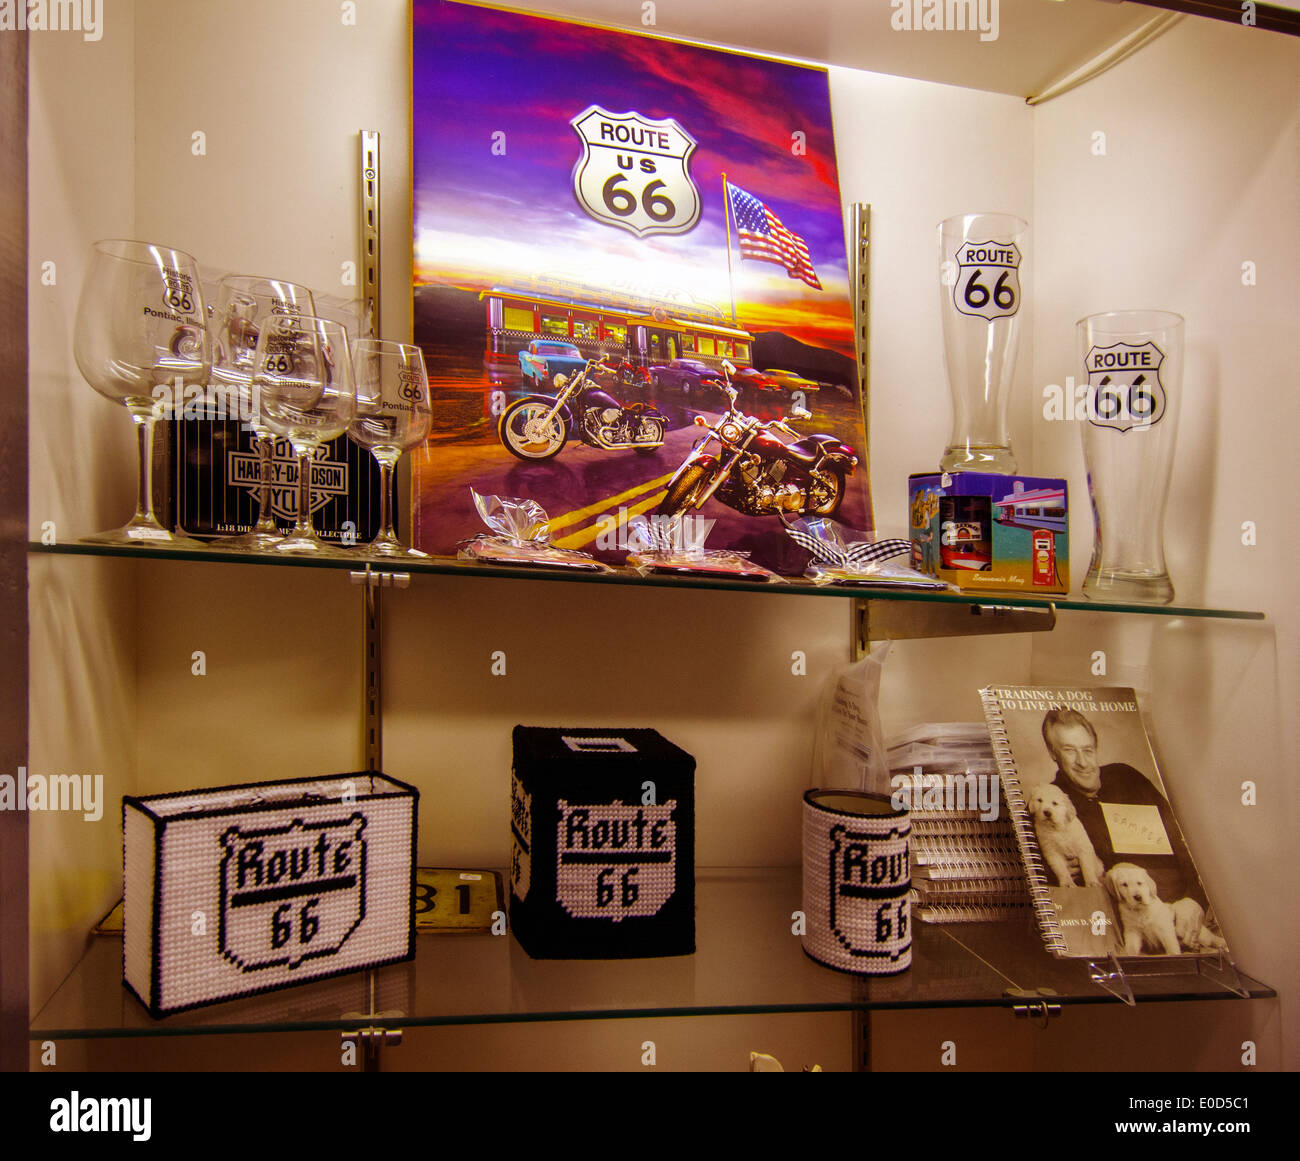 Souvenirs de la Route 66 Hall of Fame and Museum de Pontiac, Illinois, une ville le long de la Route 66. Banque D'Images